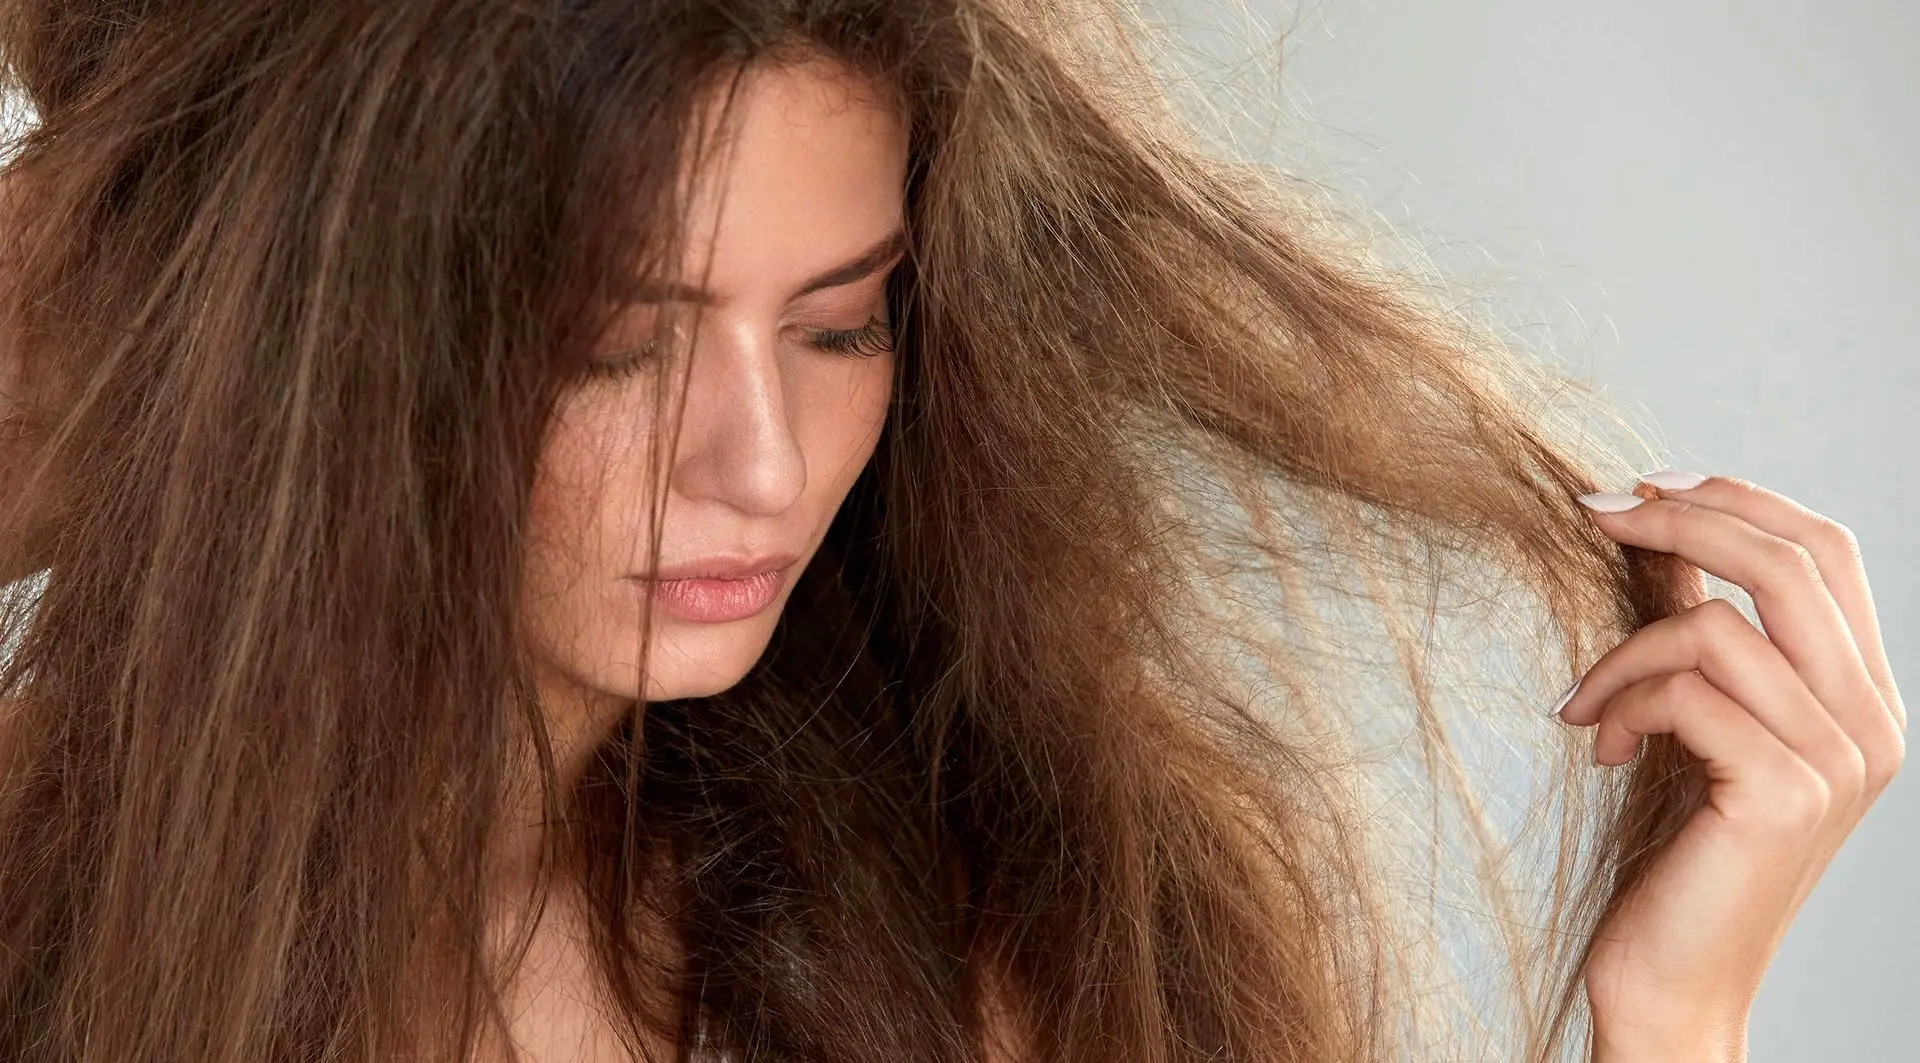 چگونه موهای آسیب دیده را ترمیم کنیم؟ / راه های جلوگیری از ریزش مو - داروخانه آنلاین فارمافوری